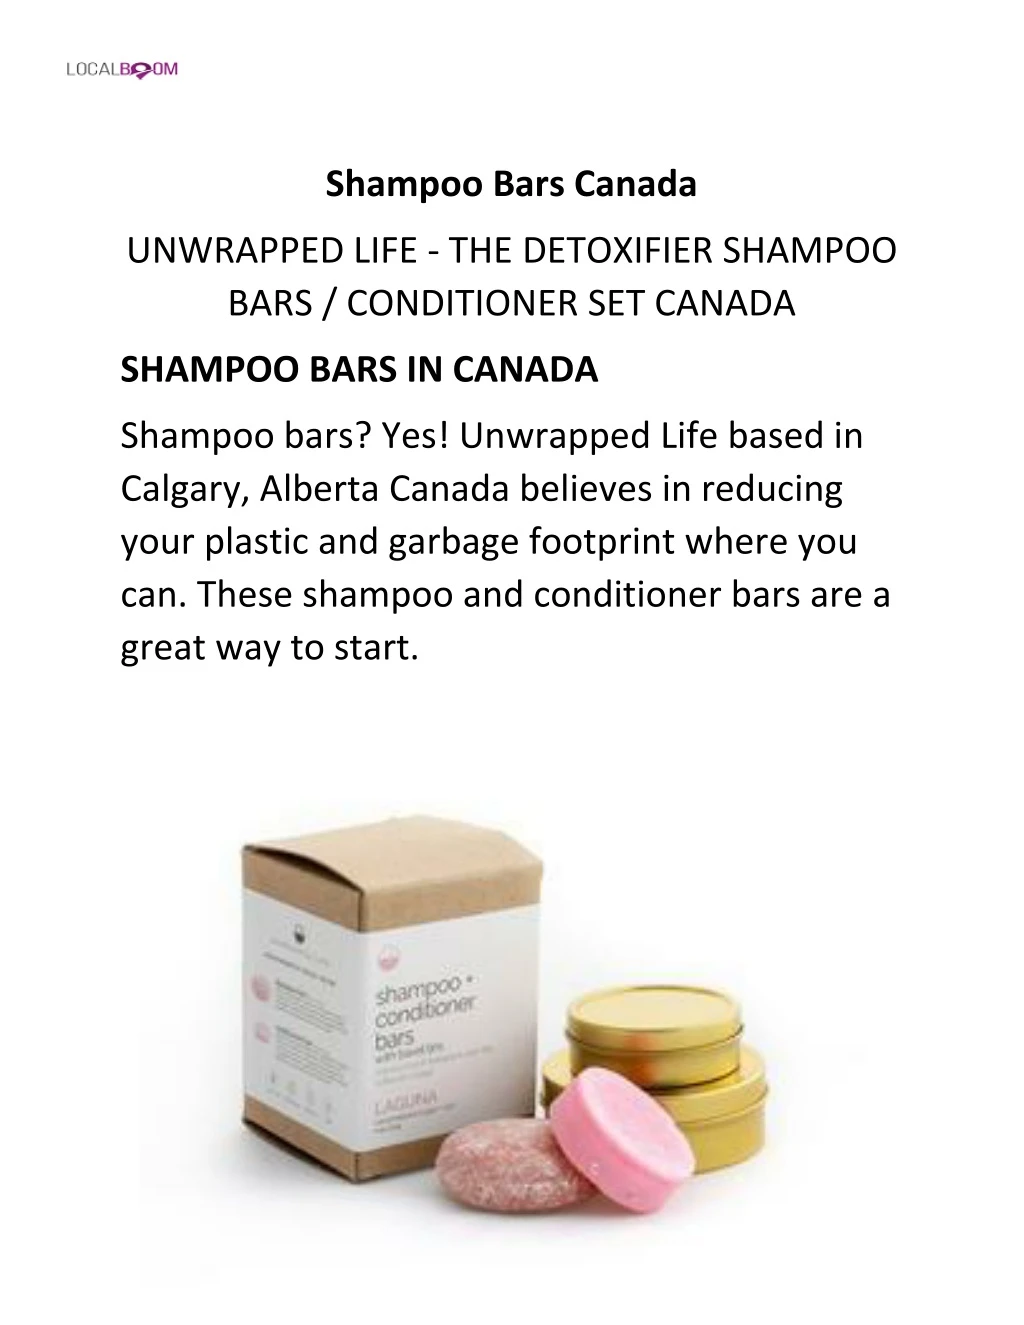 shampoo bars canada